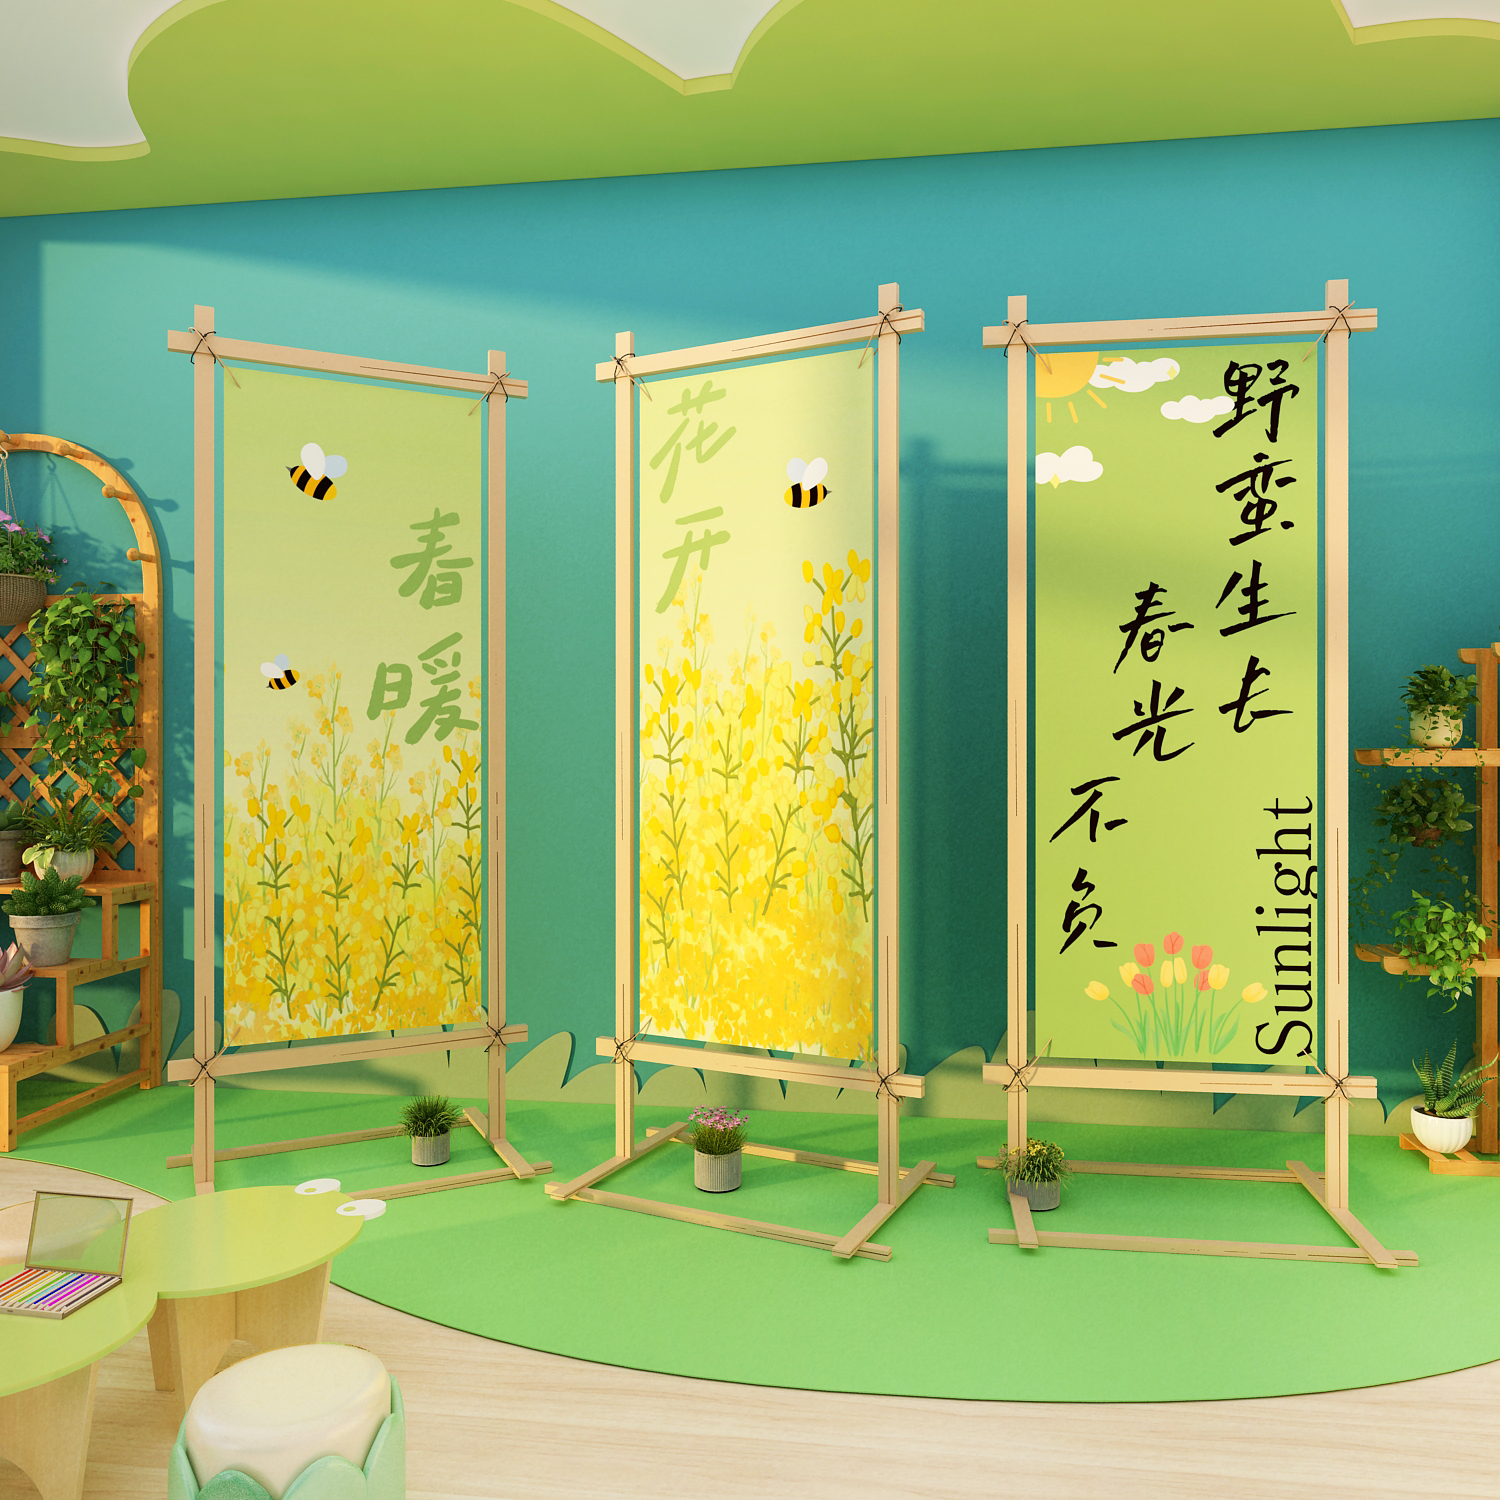 春天主题环创互动幼儿园墙面装饰成品文化布置植物角自然区教室画